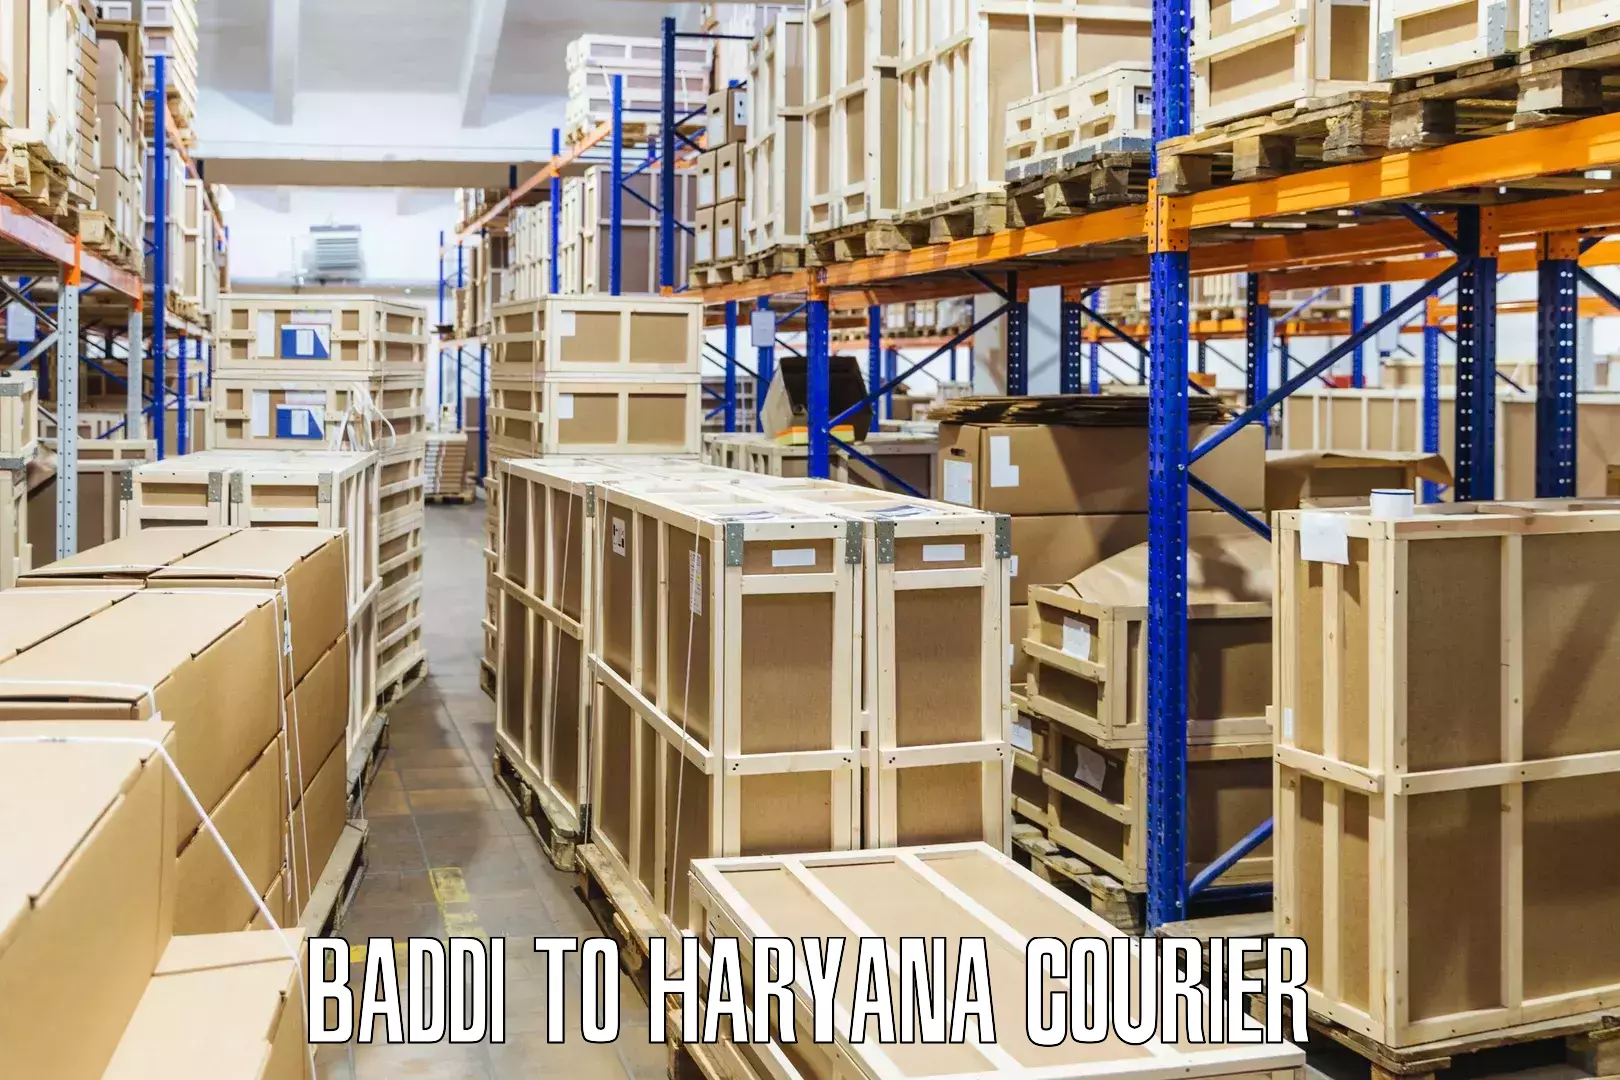 Cargo delivery service Baddi to Charkhari